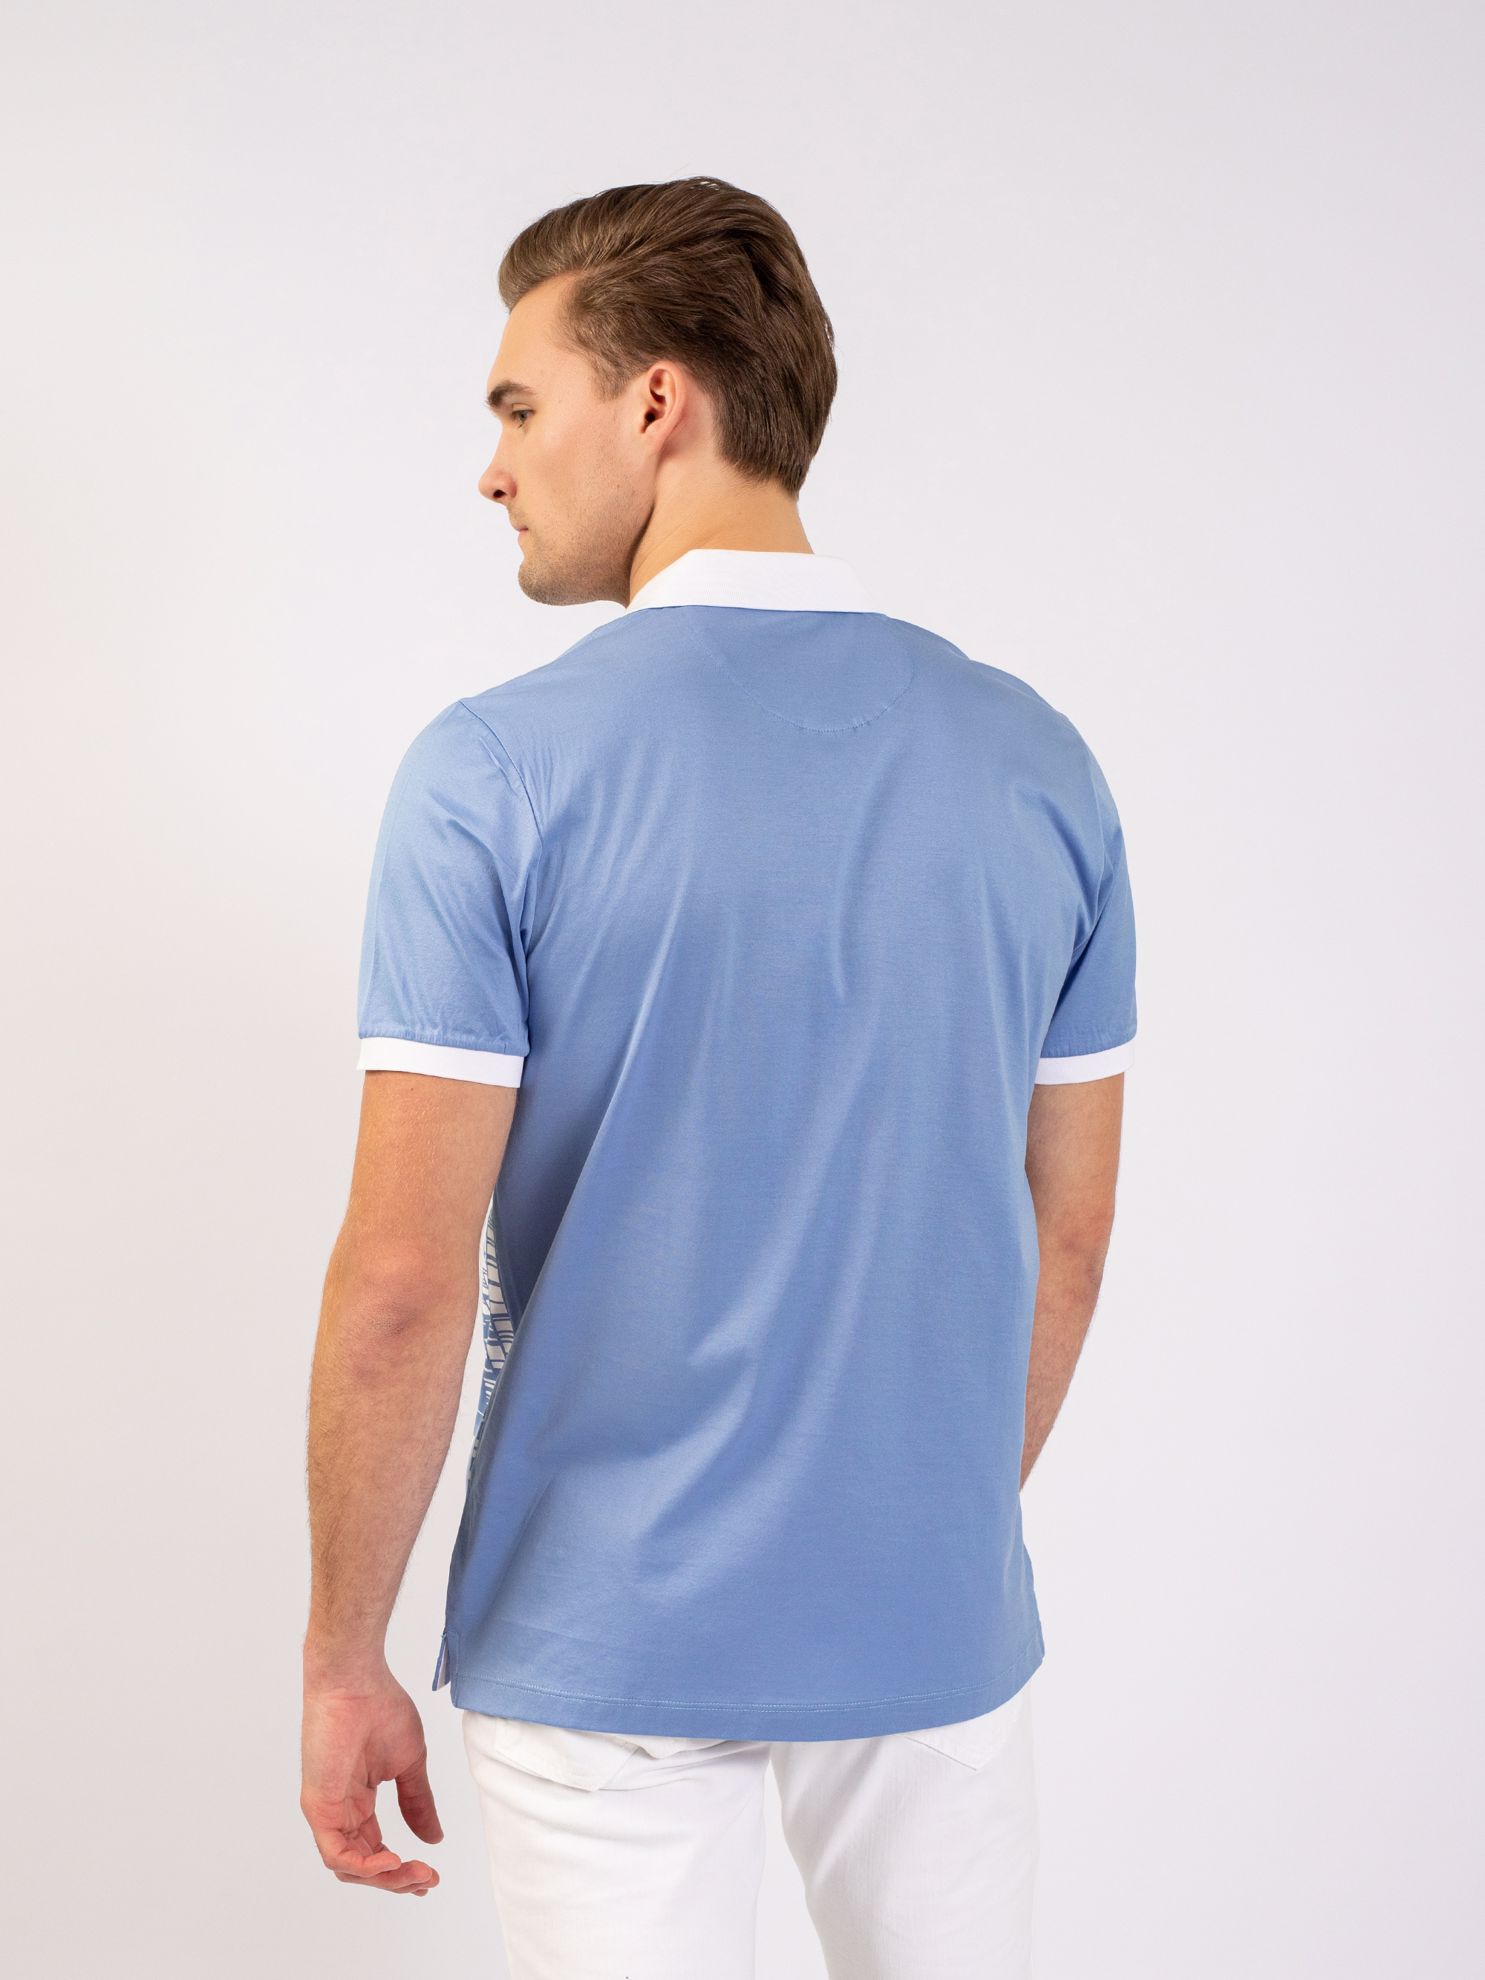 Karaca Erkek Regular Fit Polo Yaka Tişört-Mavi. ürün görseli